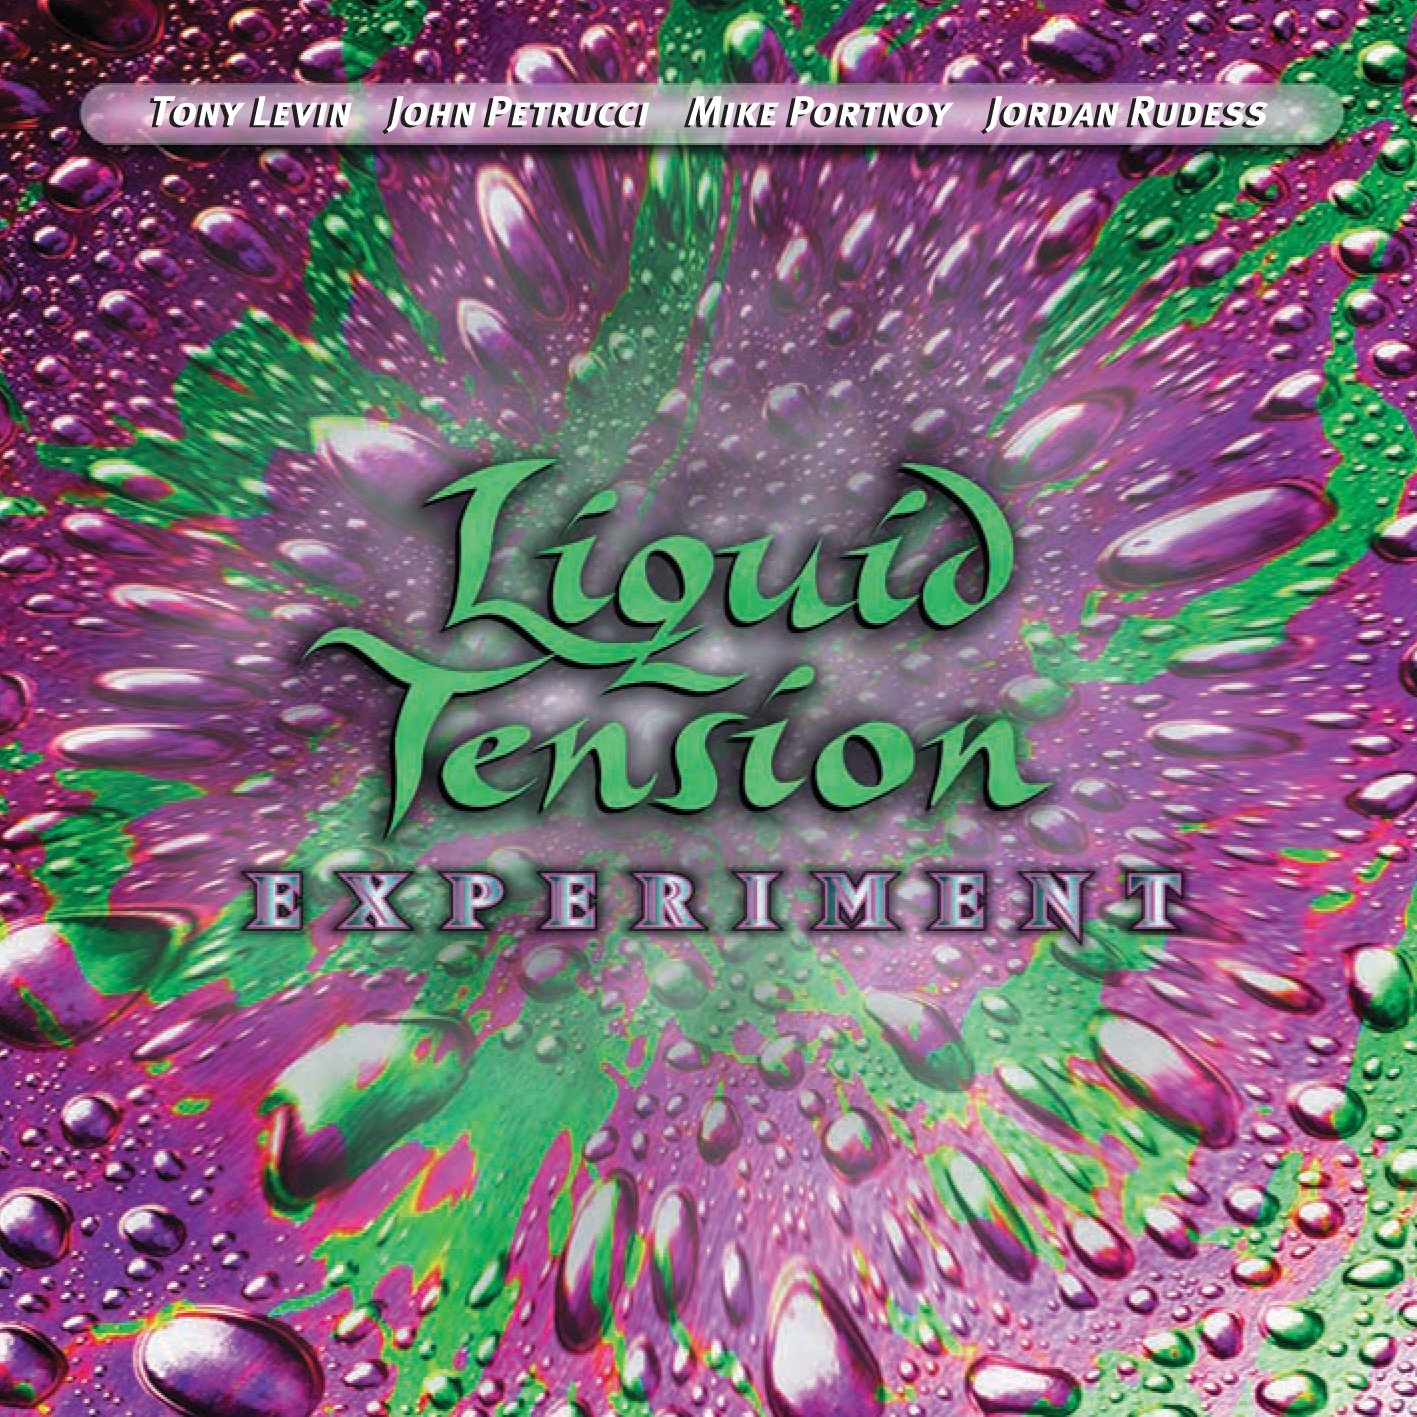 Liquid Tension Experiment - Liquid Tension Experiment (1998)